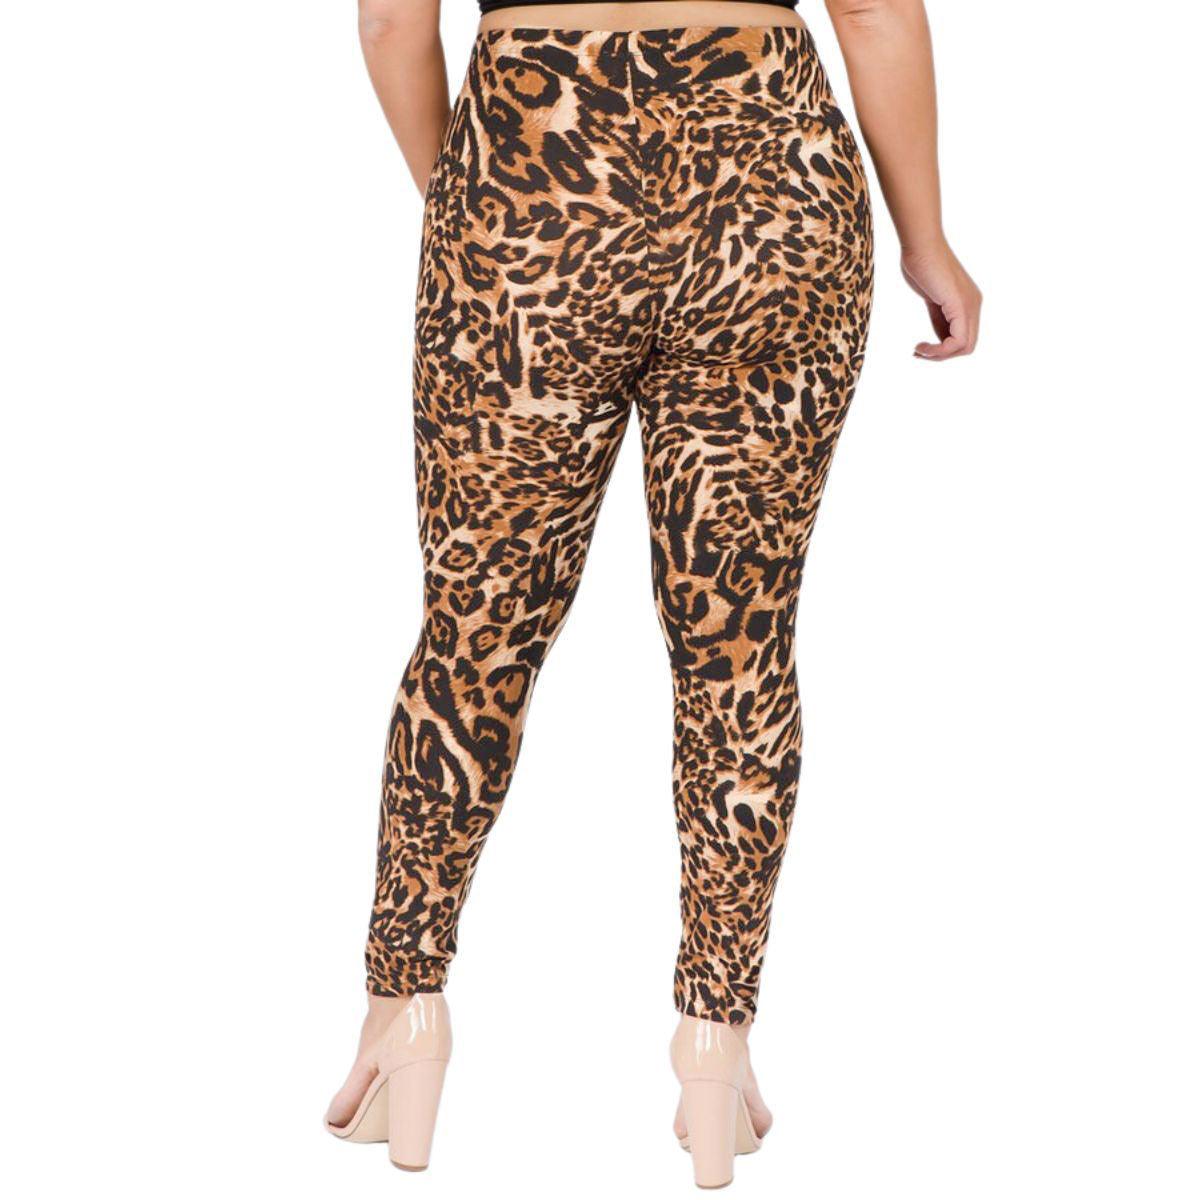 Roar in Style: Trendy Plus Size Leopard Print Leggings - Buy Now! – Jewelry  Bubble